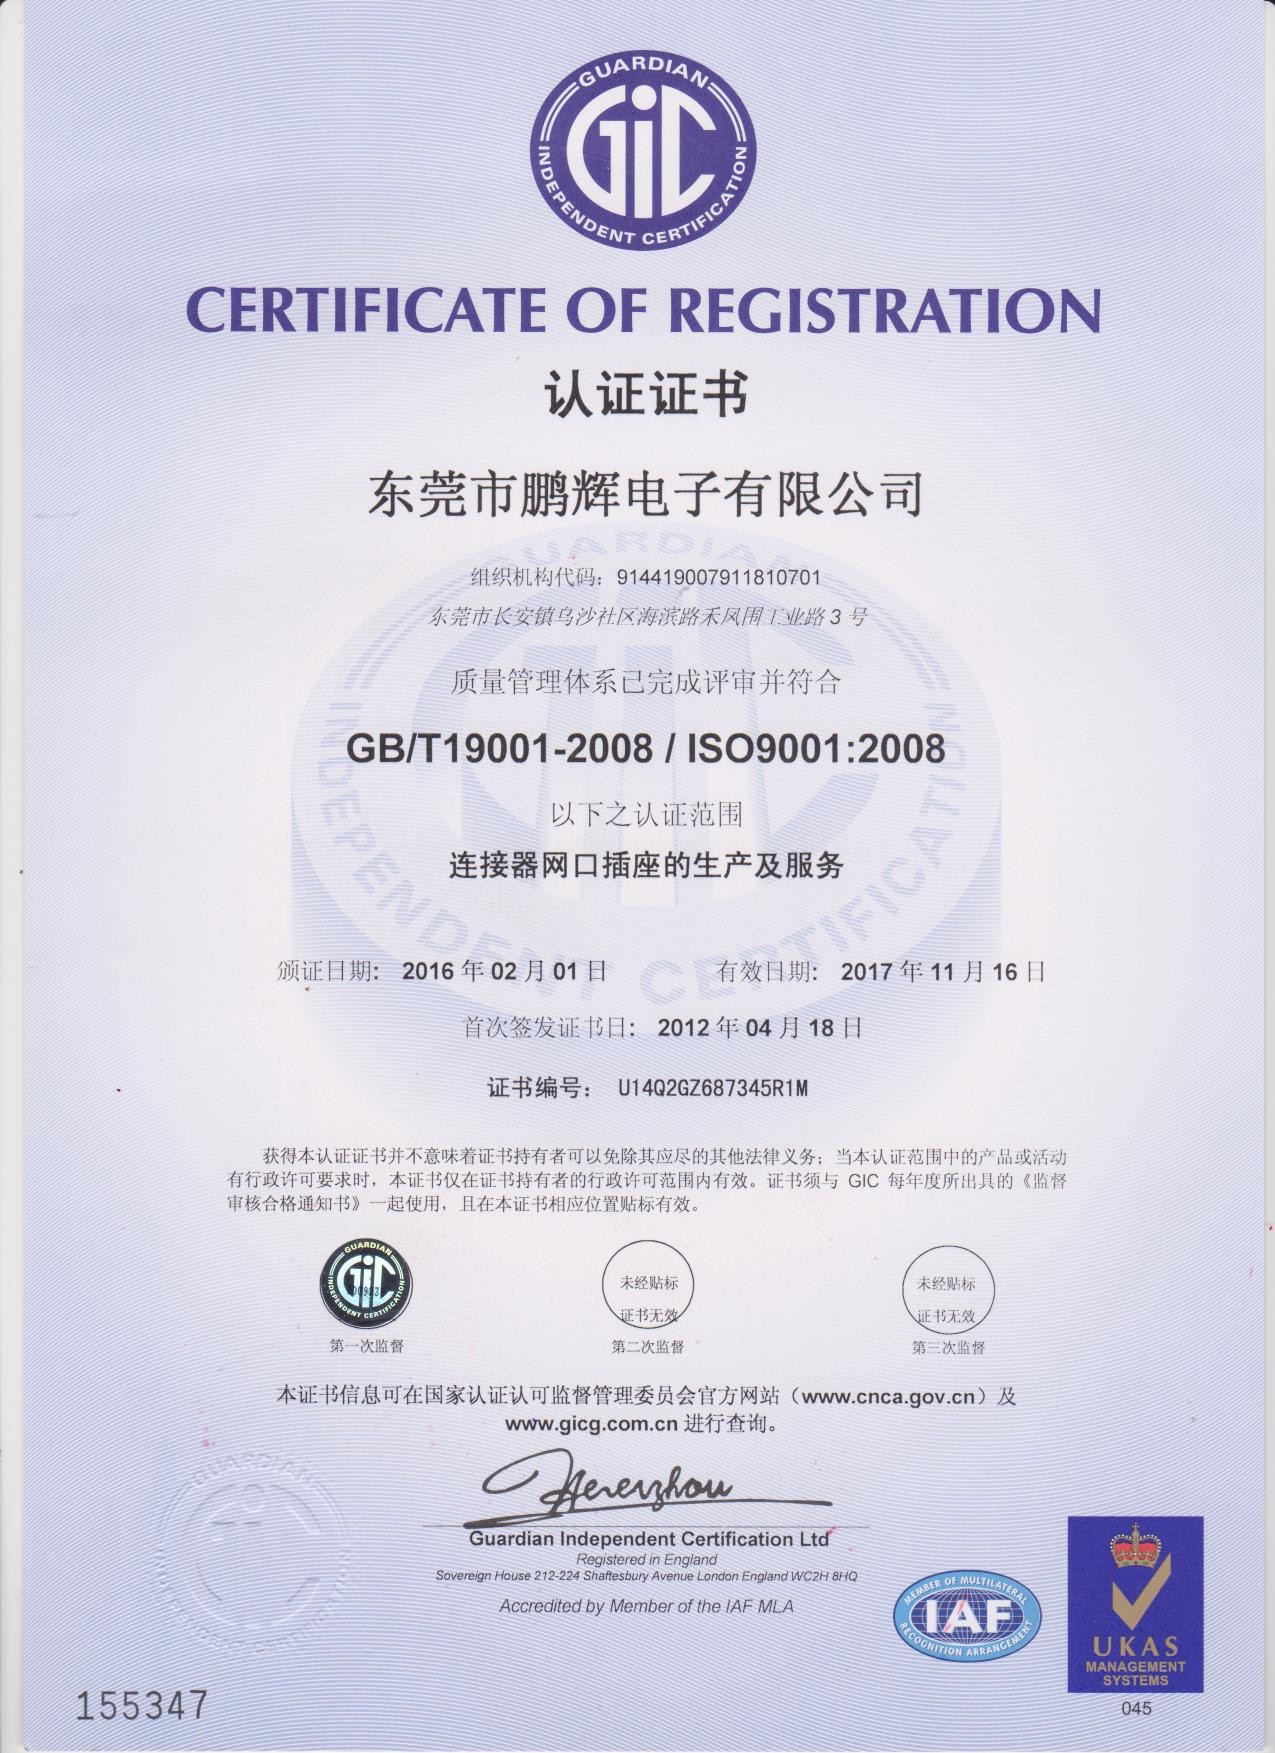 Dongguan Penghui Electronics Co., Ltd. Certifications